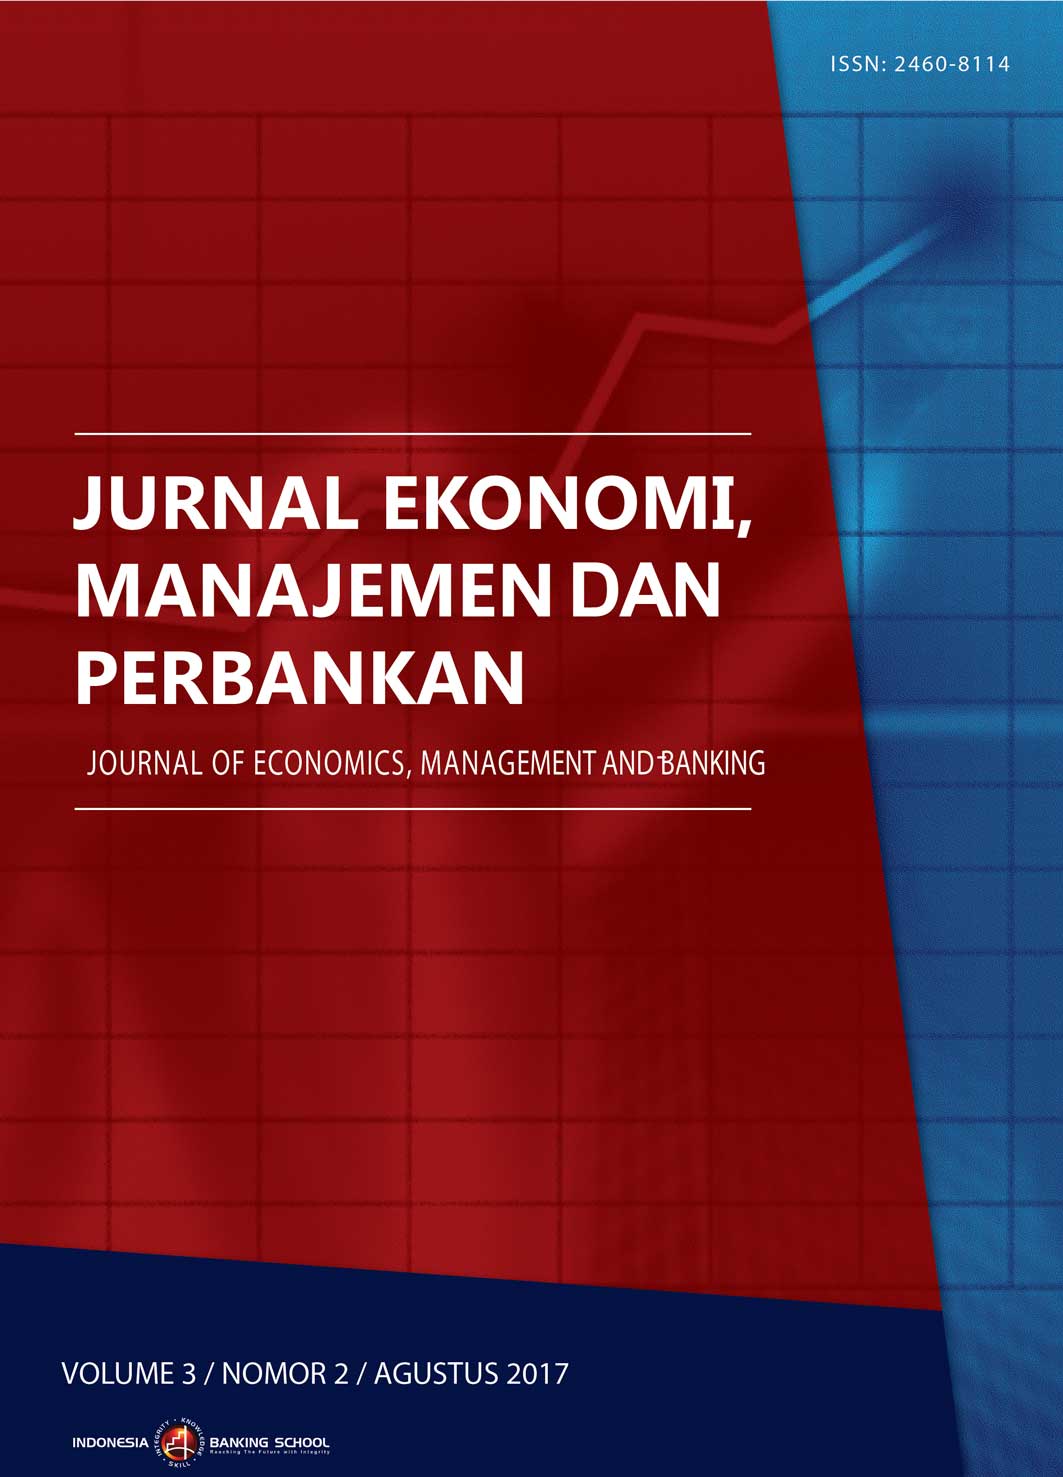 					View Vol. 3 No. 2 (2017): Jurnal Ekonomi, Manajemen dan Perbankan (Journal of Economics, Management, and Banking), Volume 3 No. 2, Agustus 2017
				